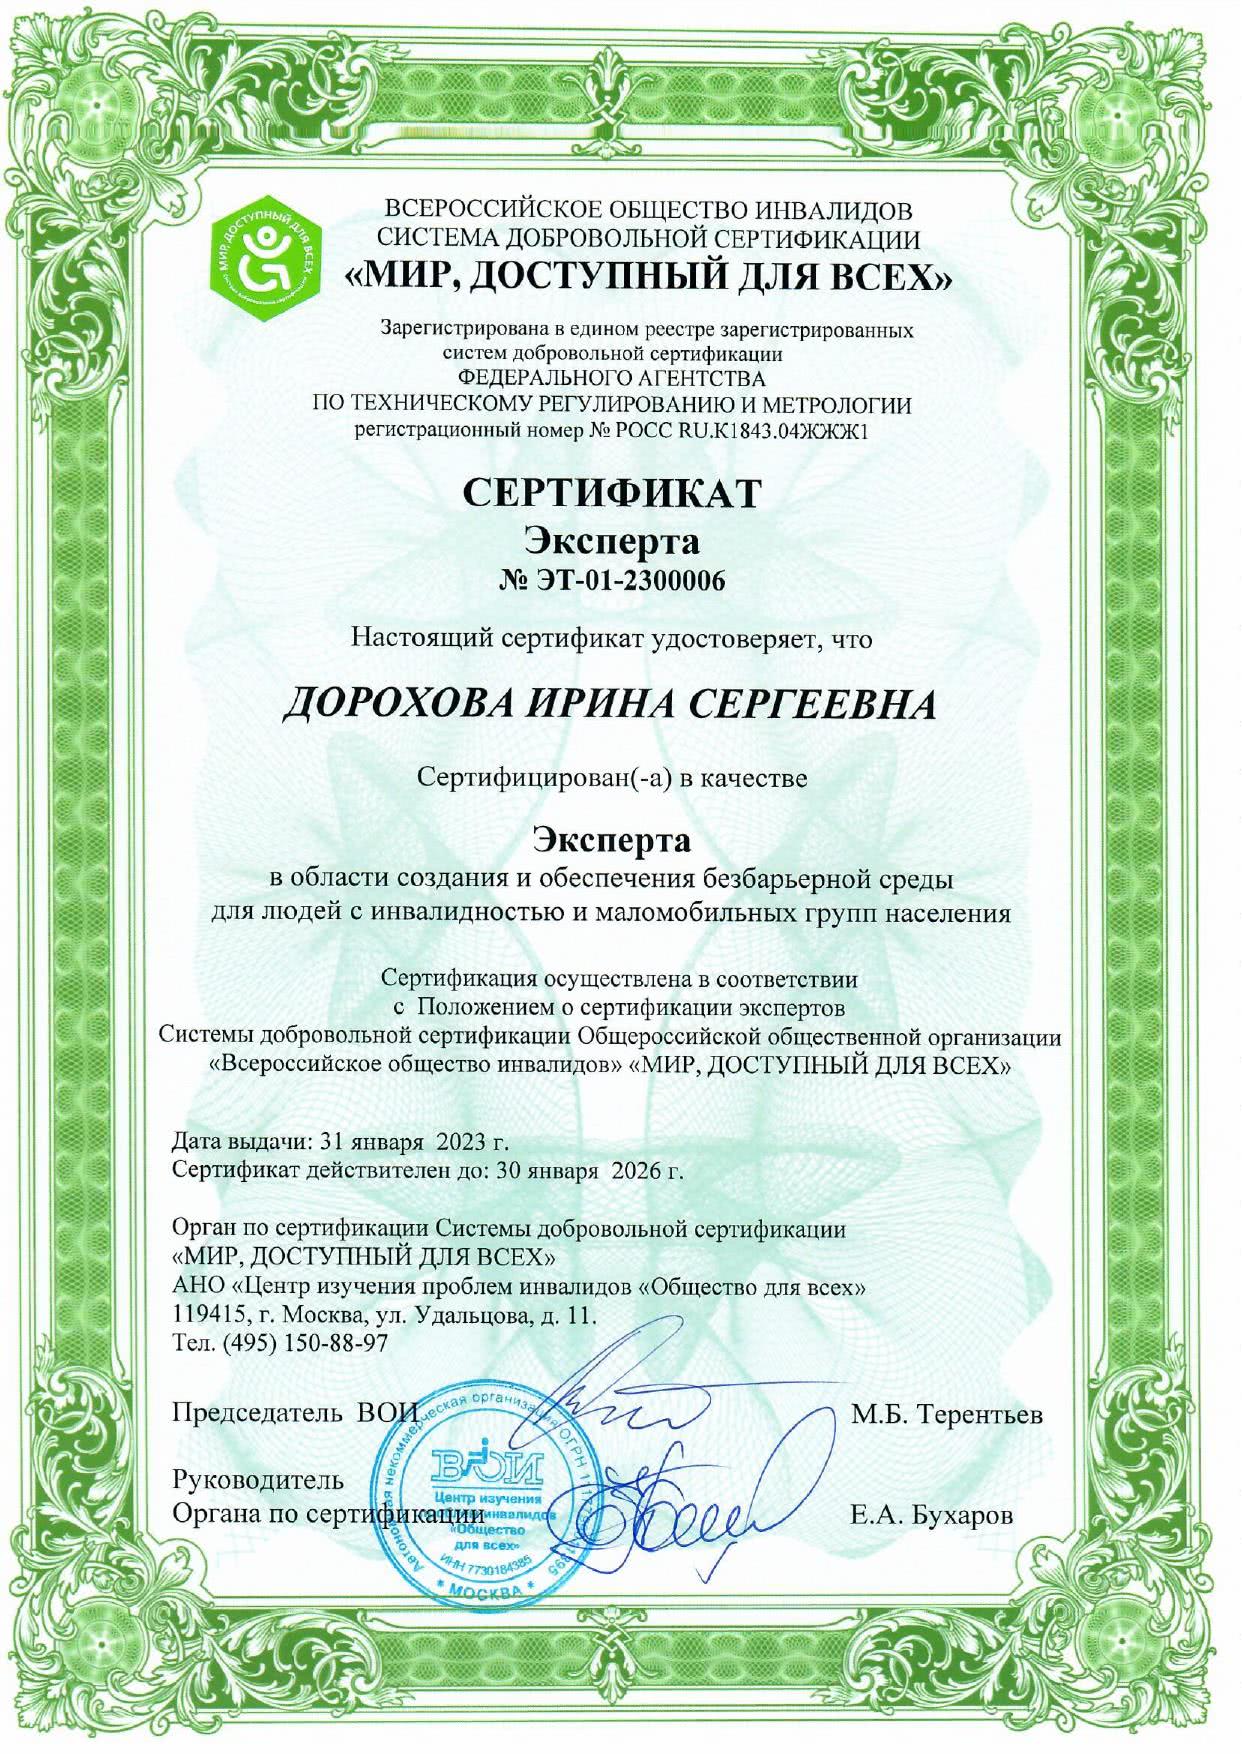 Сертификат эксперта СДС ВОИ Дорохова И. (2023-2026)